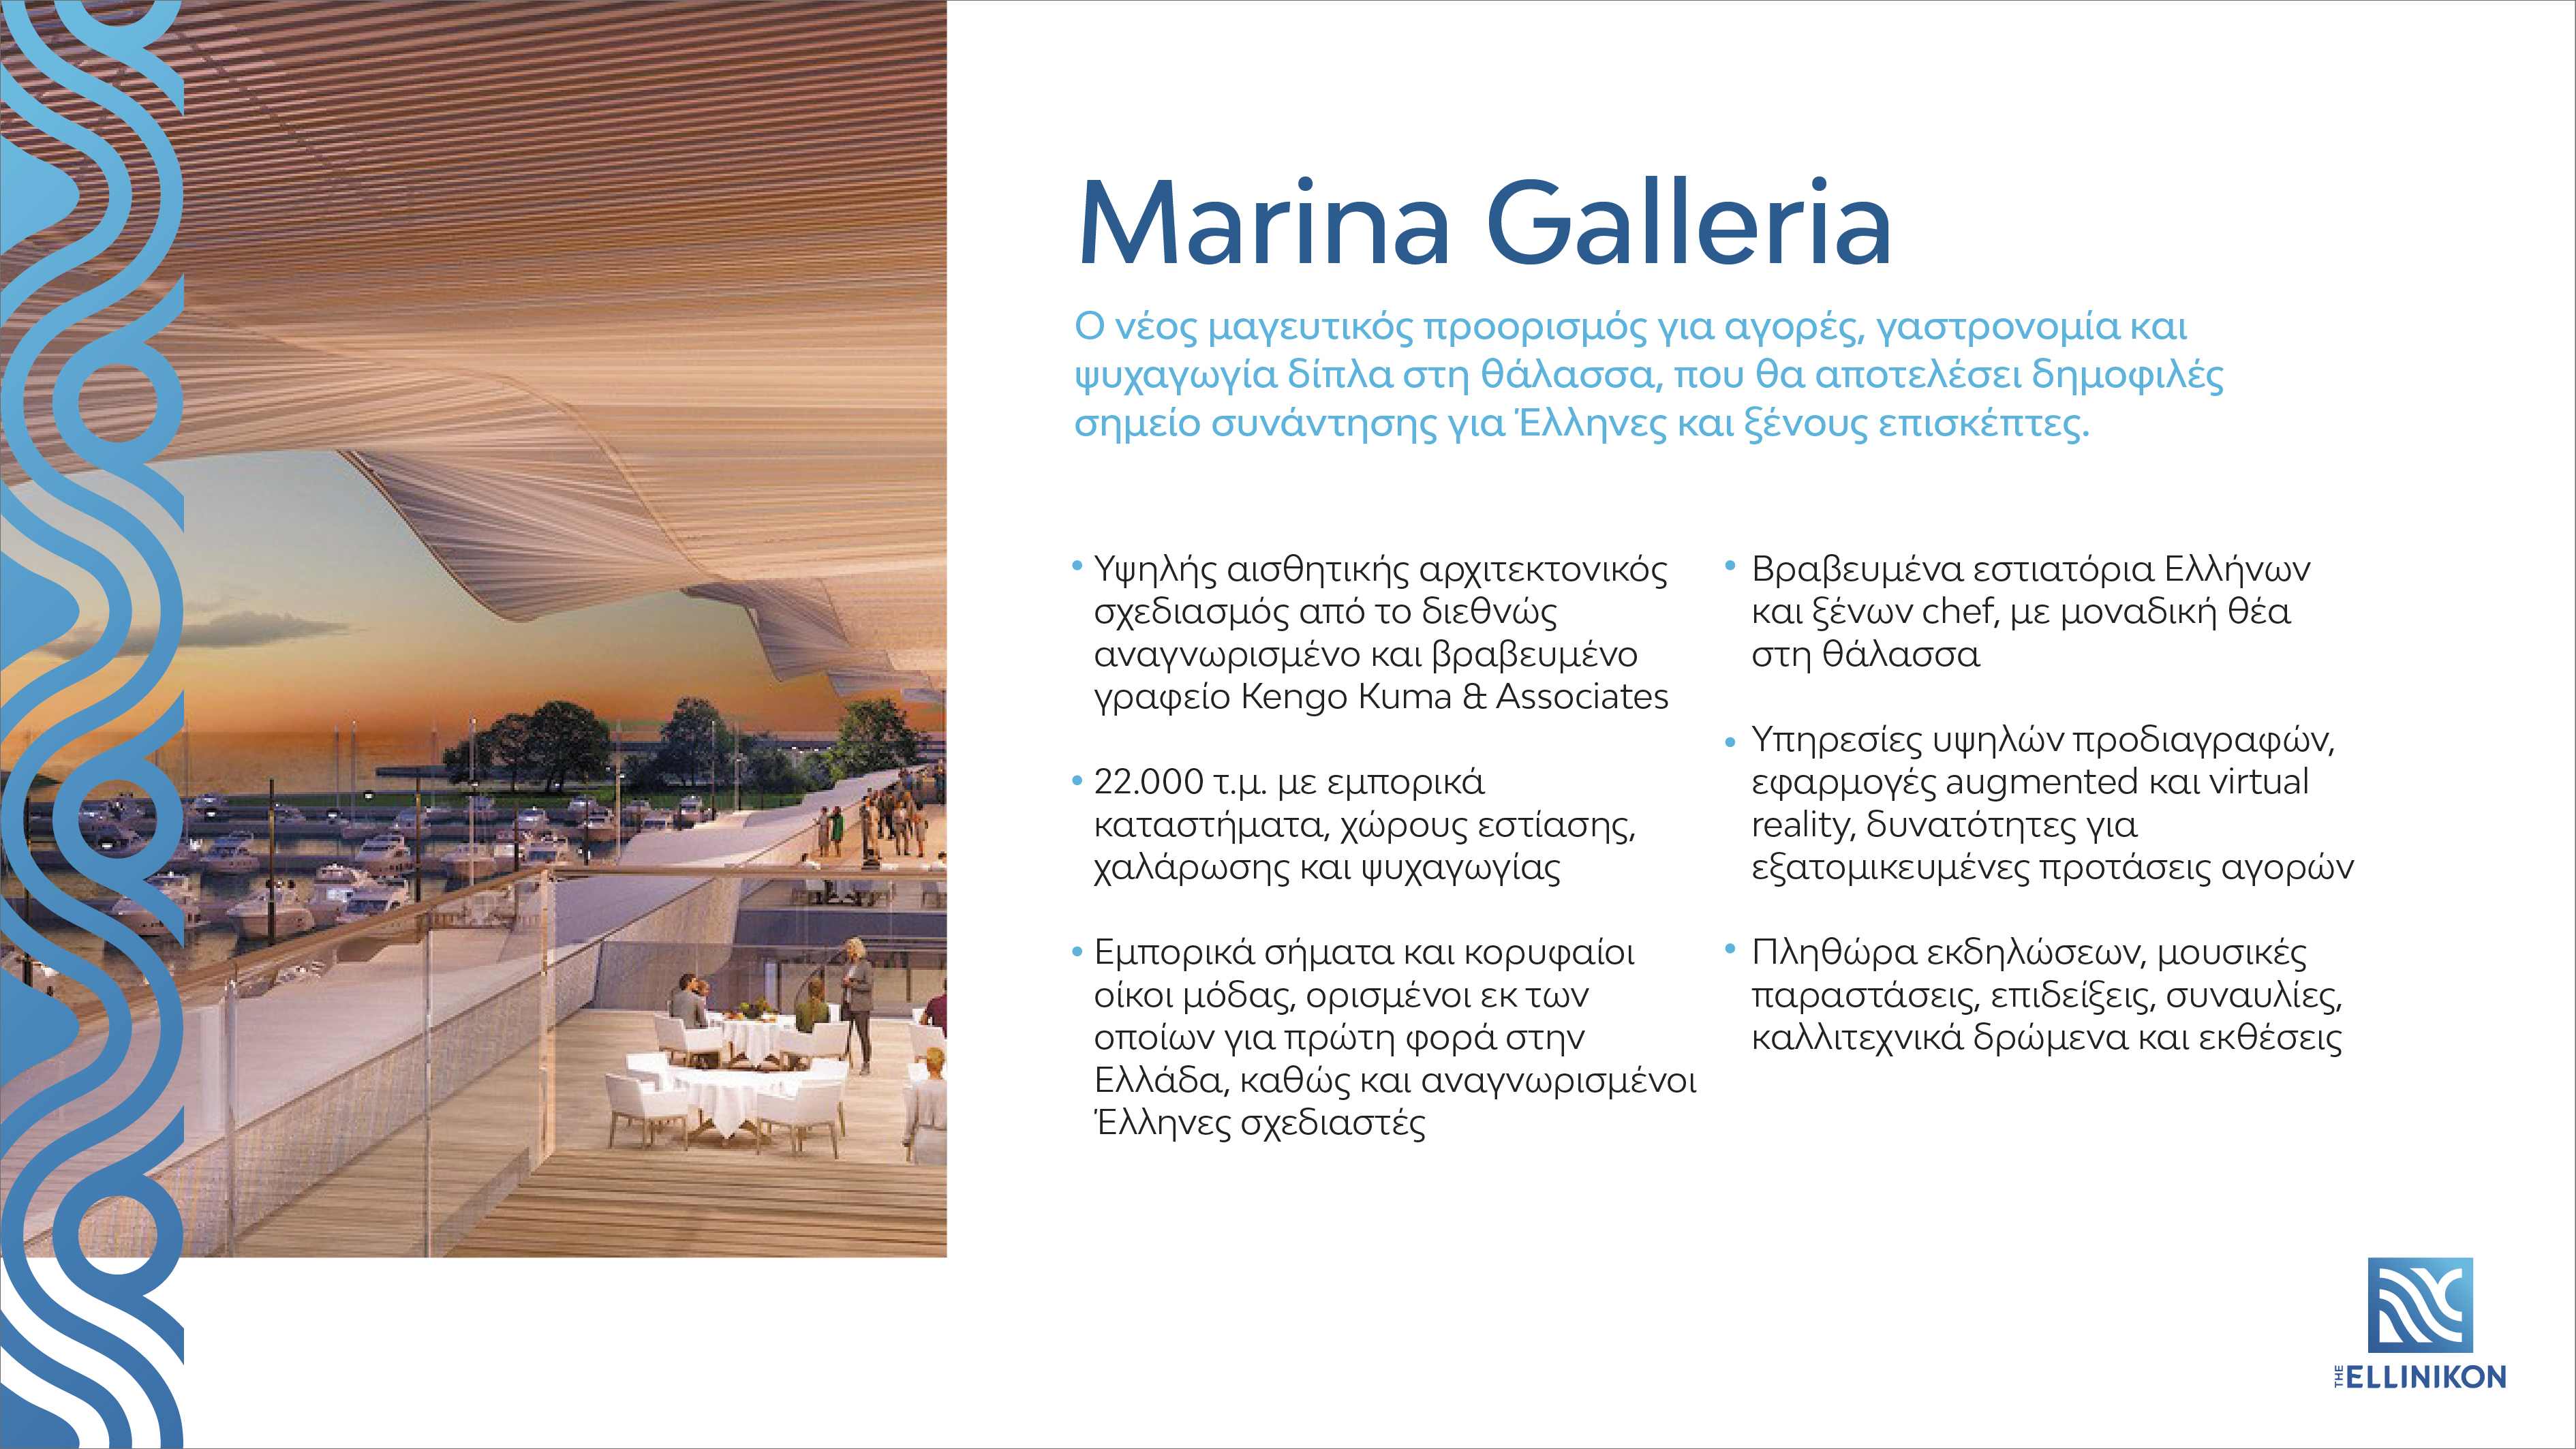 marina_galleria_at_a_glance_gr.jpg